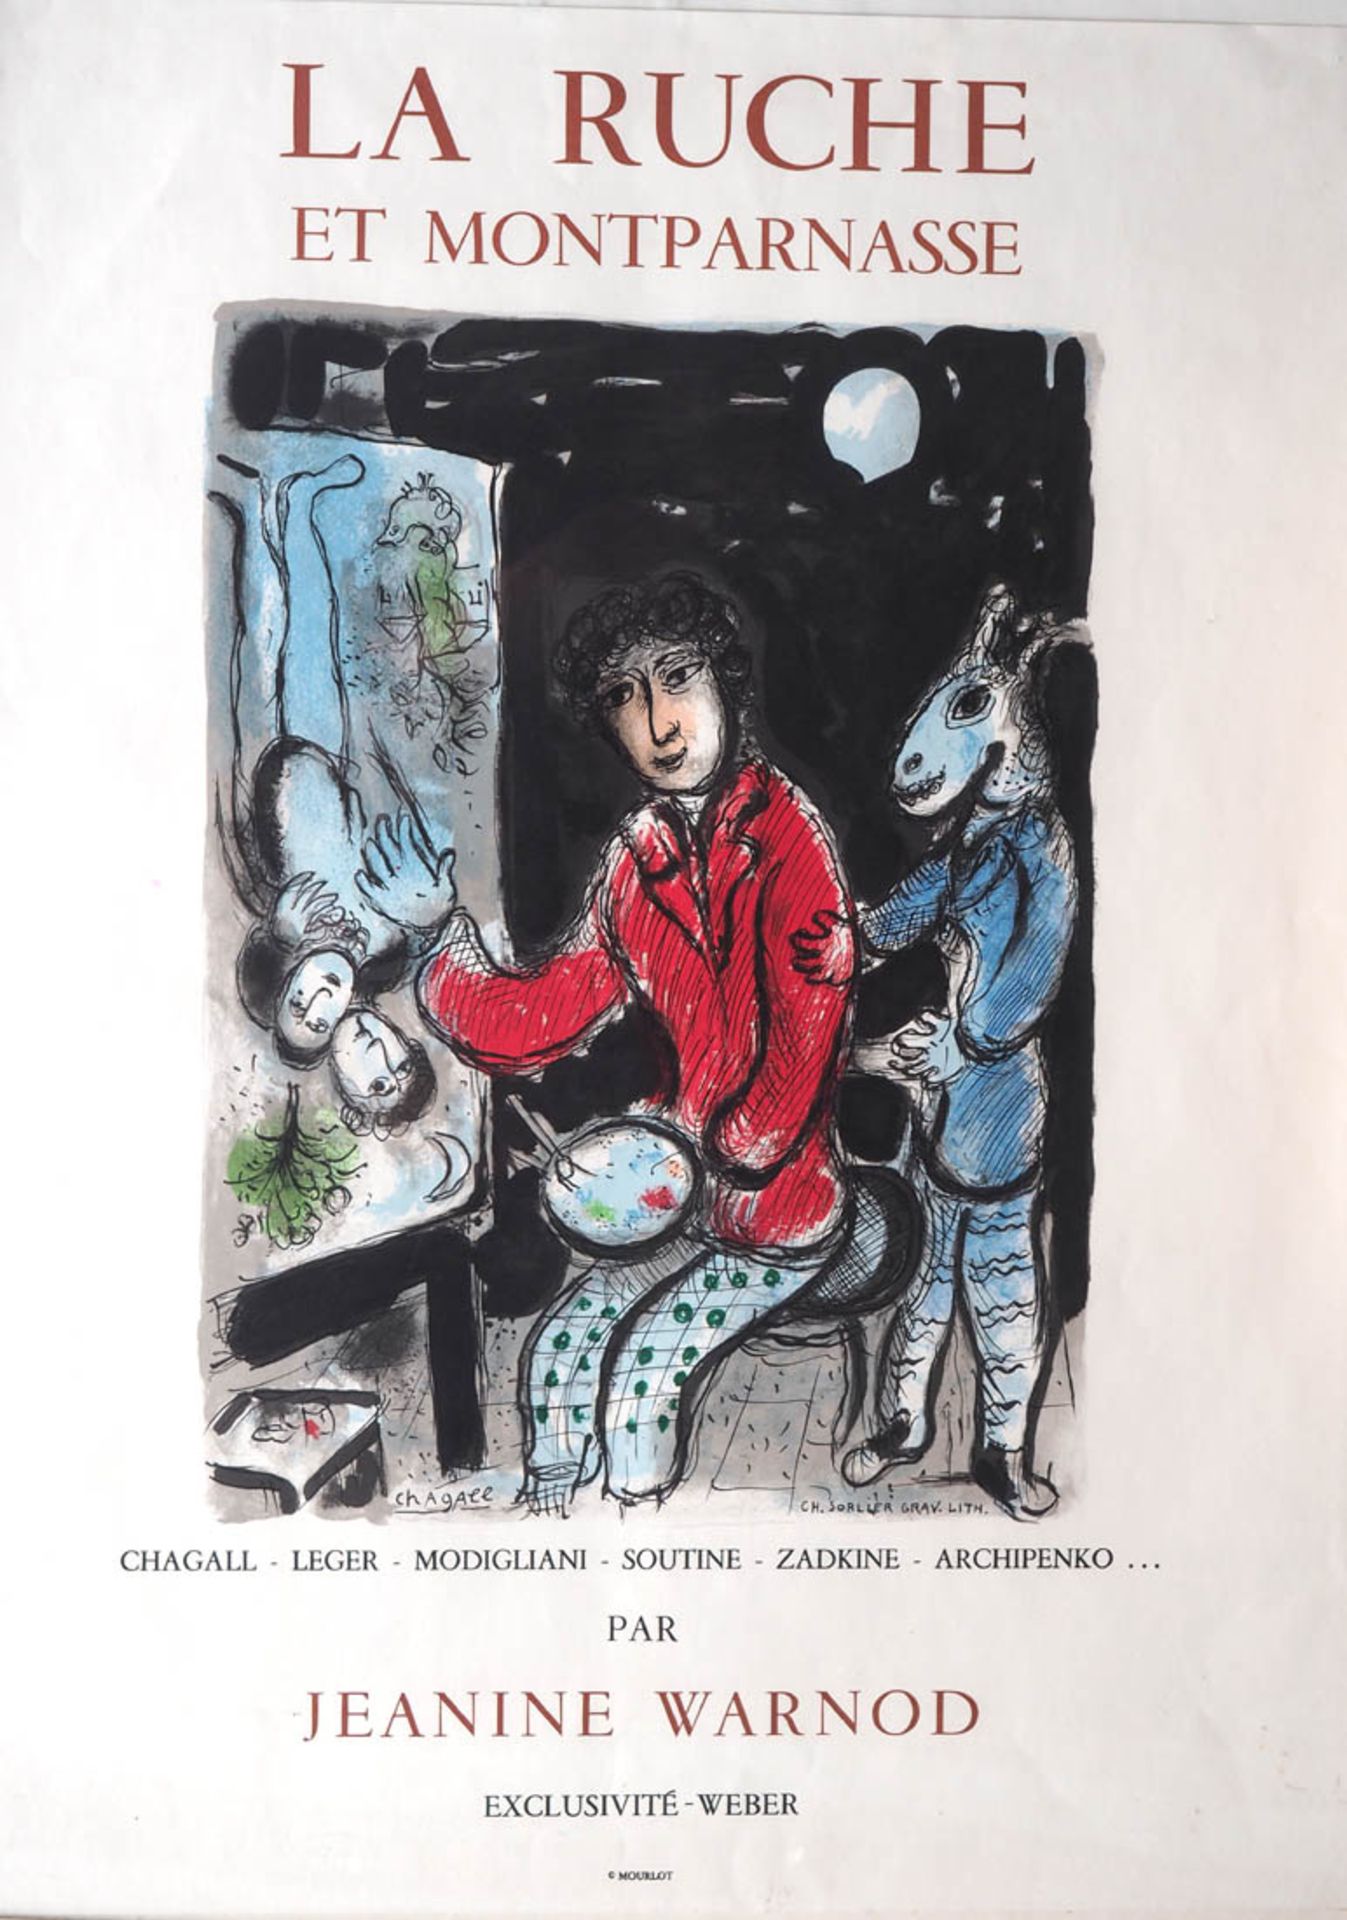 Ausstellungsplakat, "La Ruche et Montparnasse", Paris Von Janine Varneau, Titelblatt von Chagall als